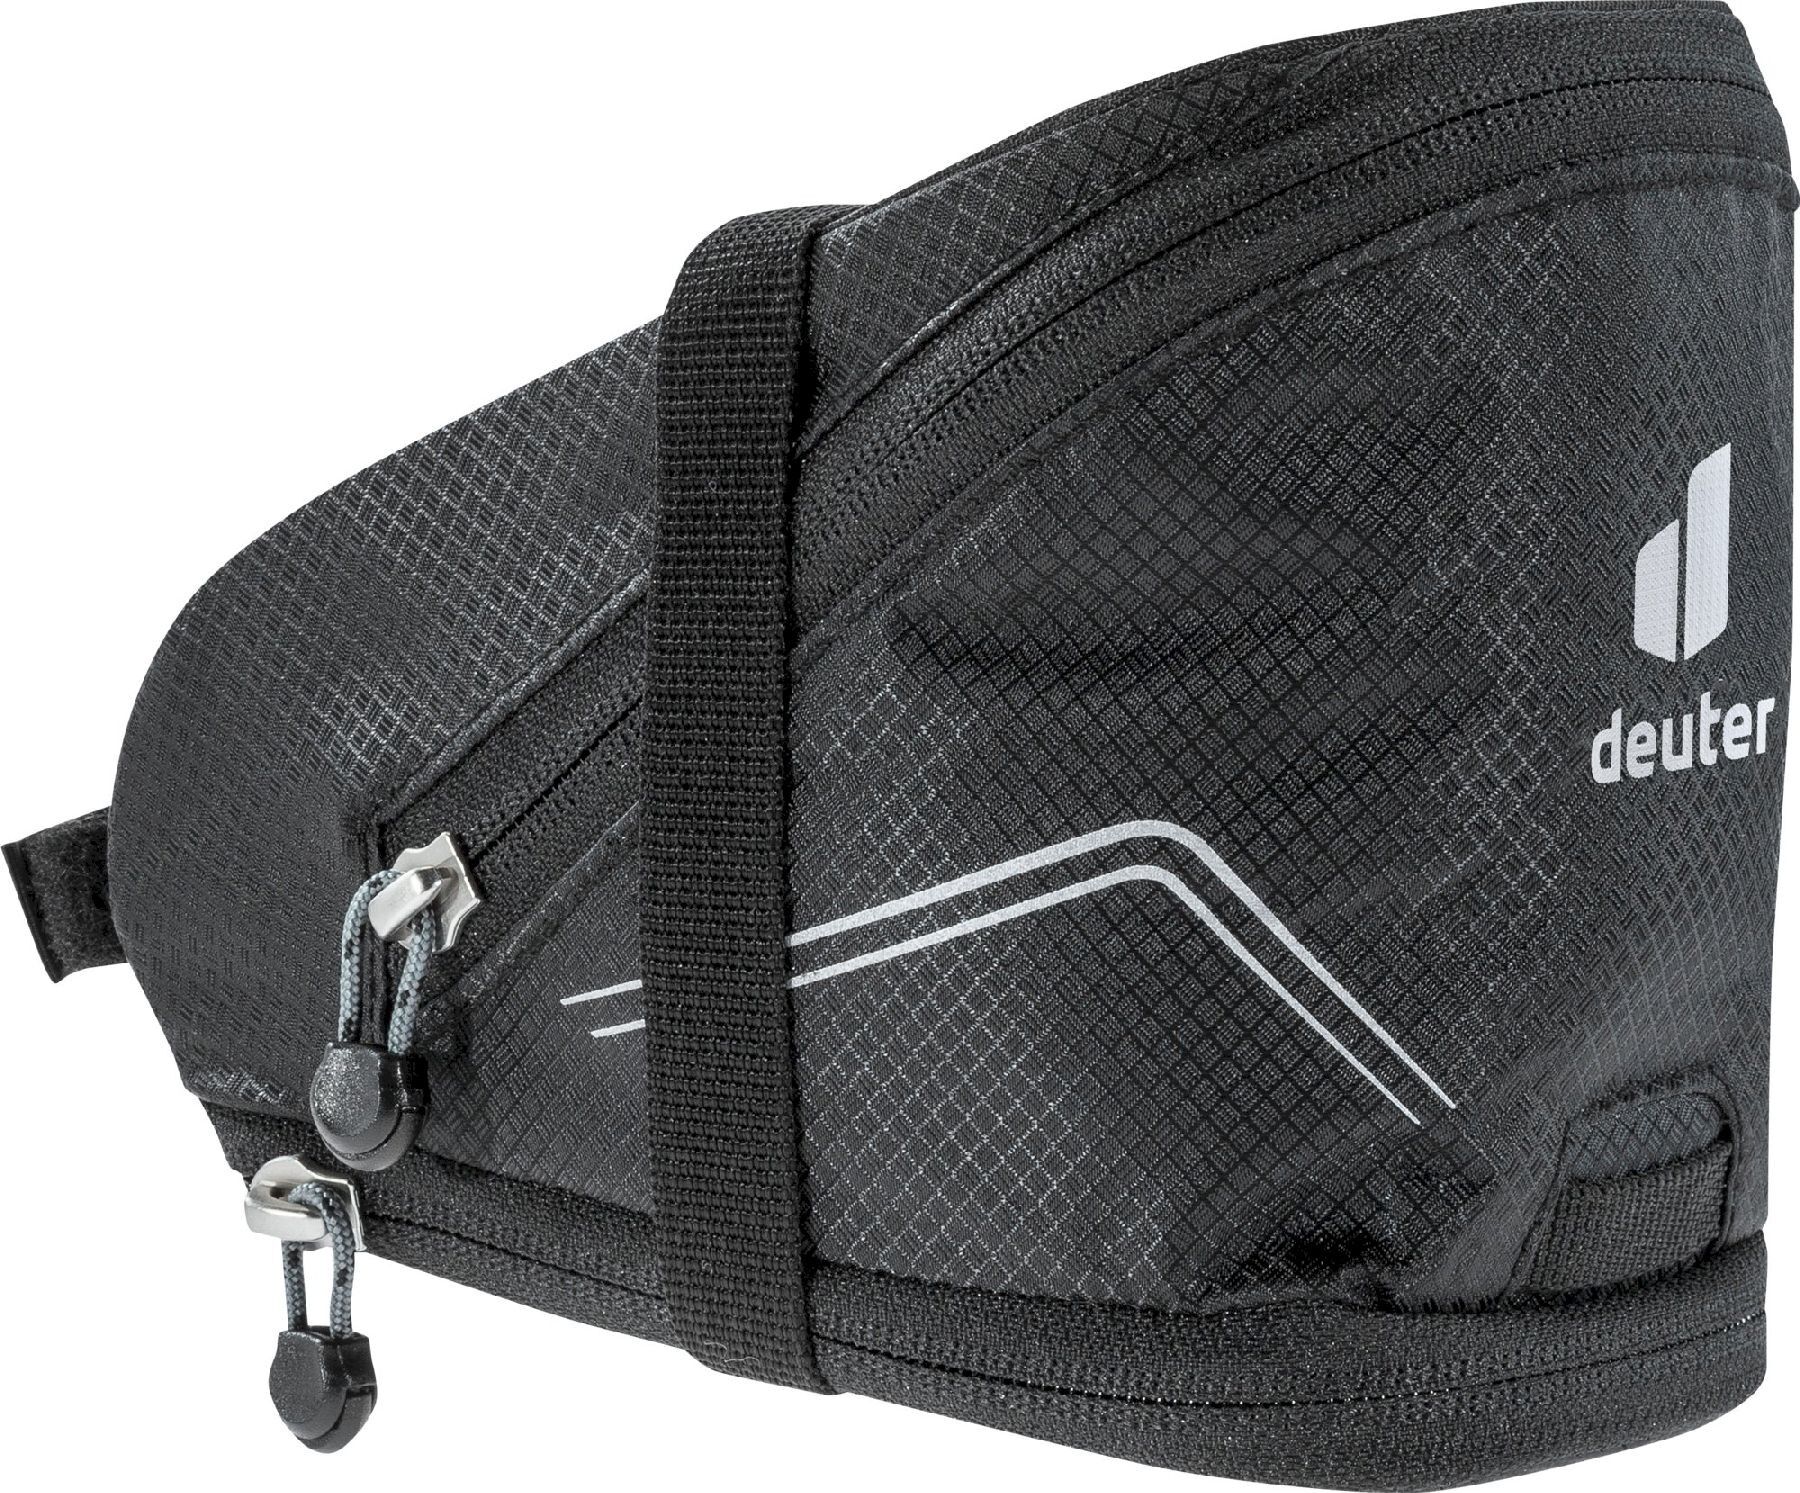 Deuter Bike Bag II - Satteltasche